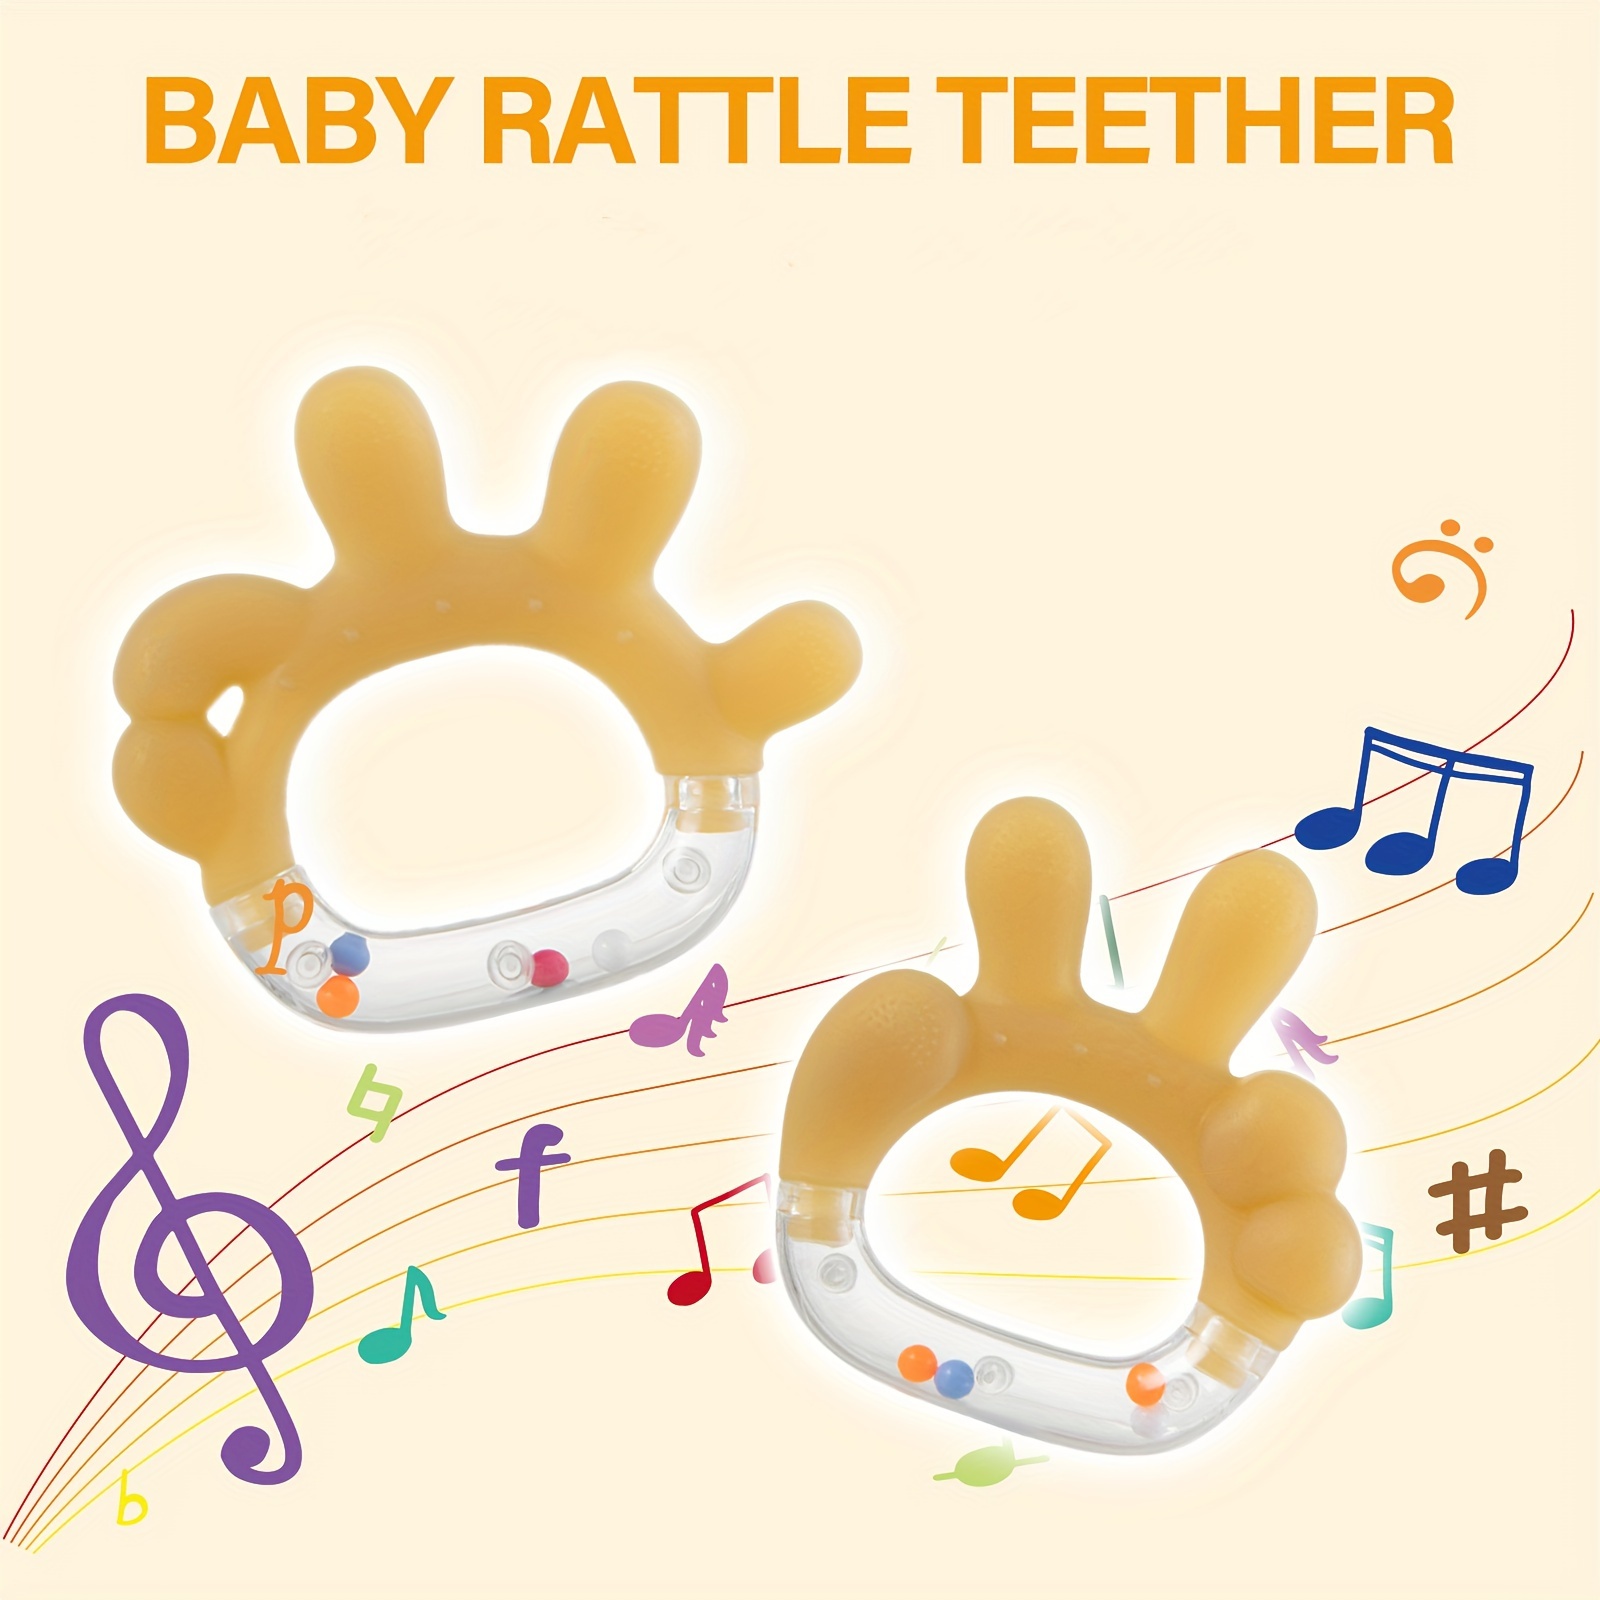 Sonajeros para bebés - Juguetes para cochecito - Recién nacido